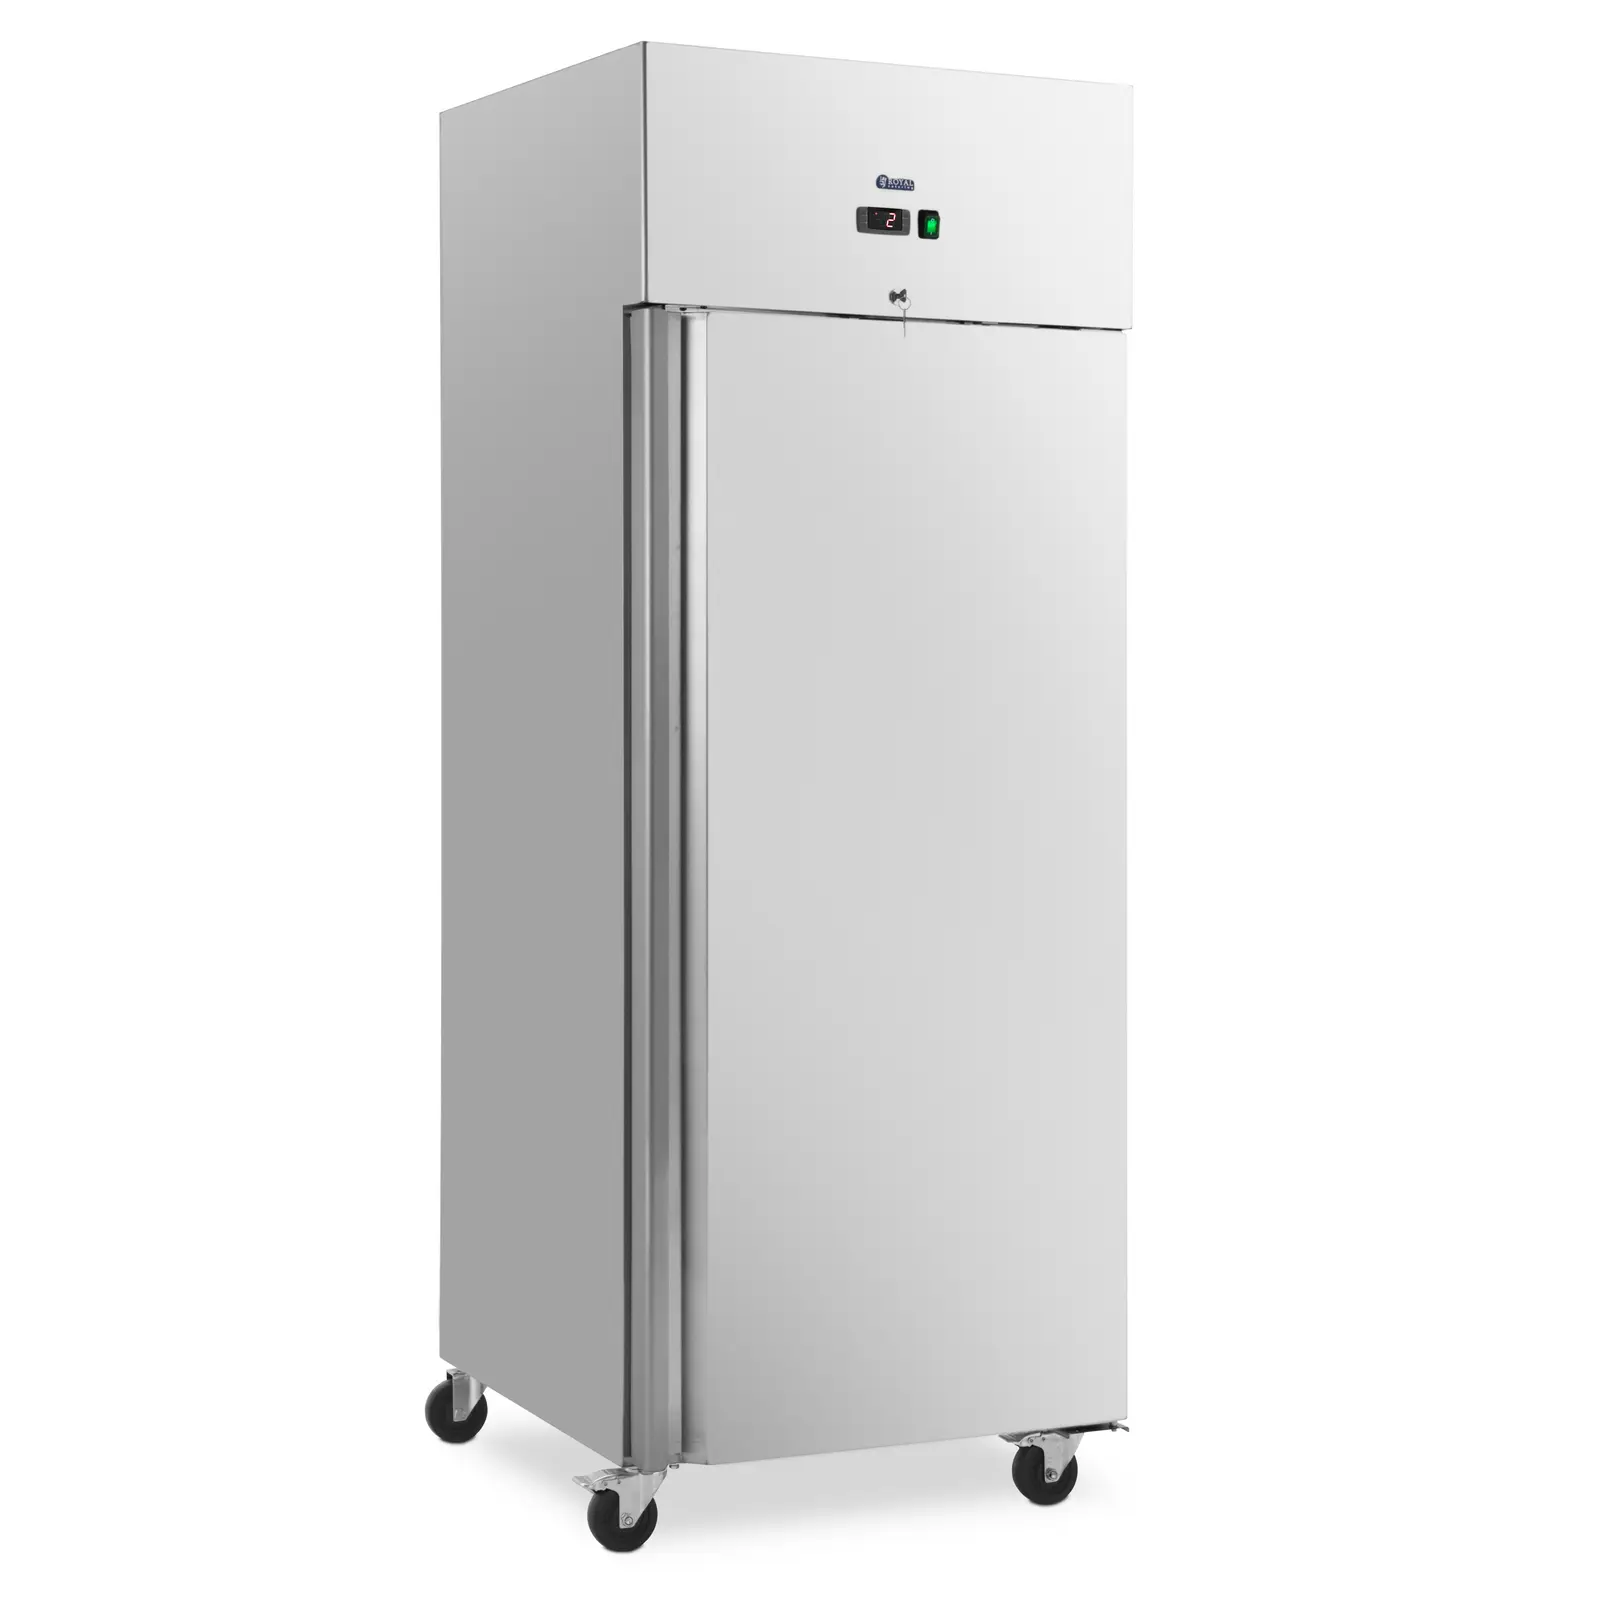 Refrigerador para gastronomía - 485 L - acero inoxidable - 1 puerta - 4 ruedas - con cerradura - Royal Catering